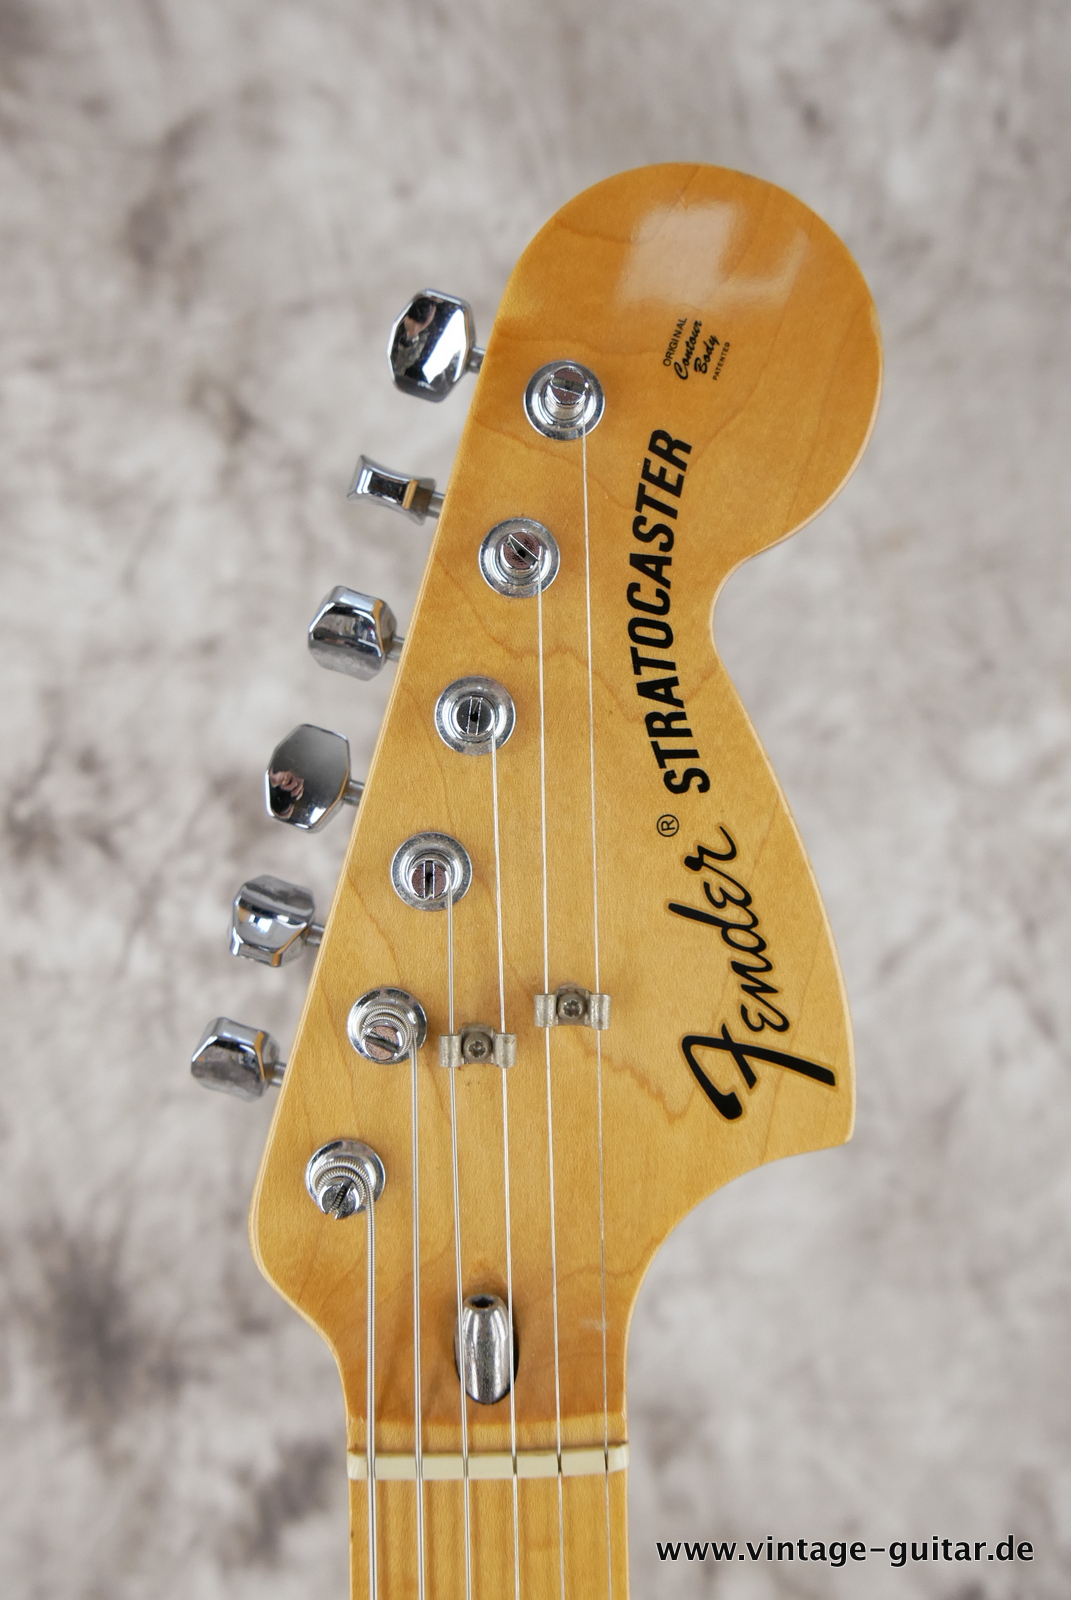 Fender_Stratocaster_70s_reissue_maple_neck_1999_Mexico-009.JPG